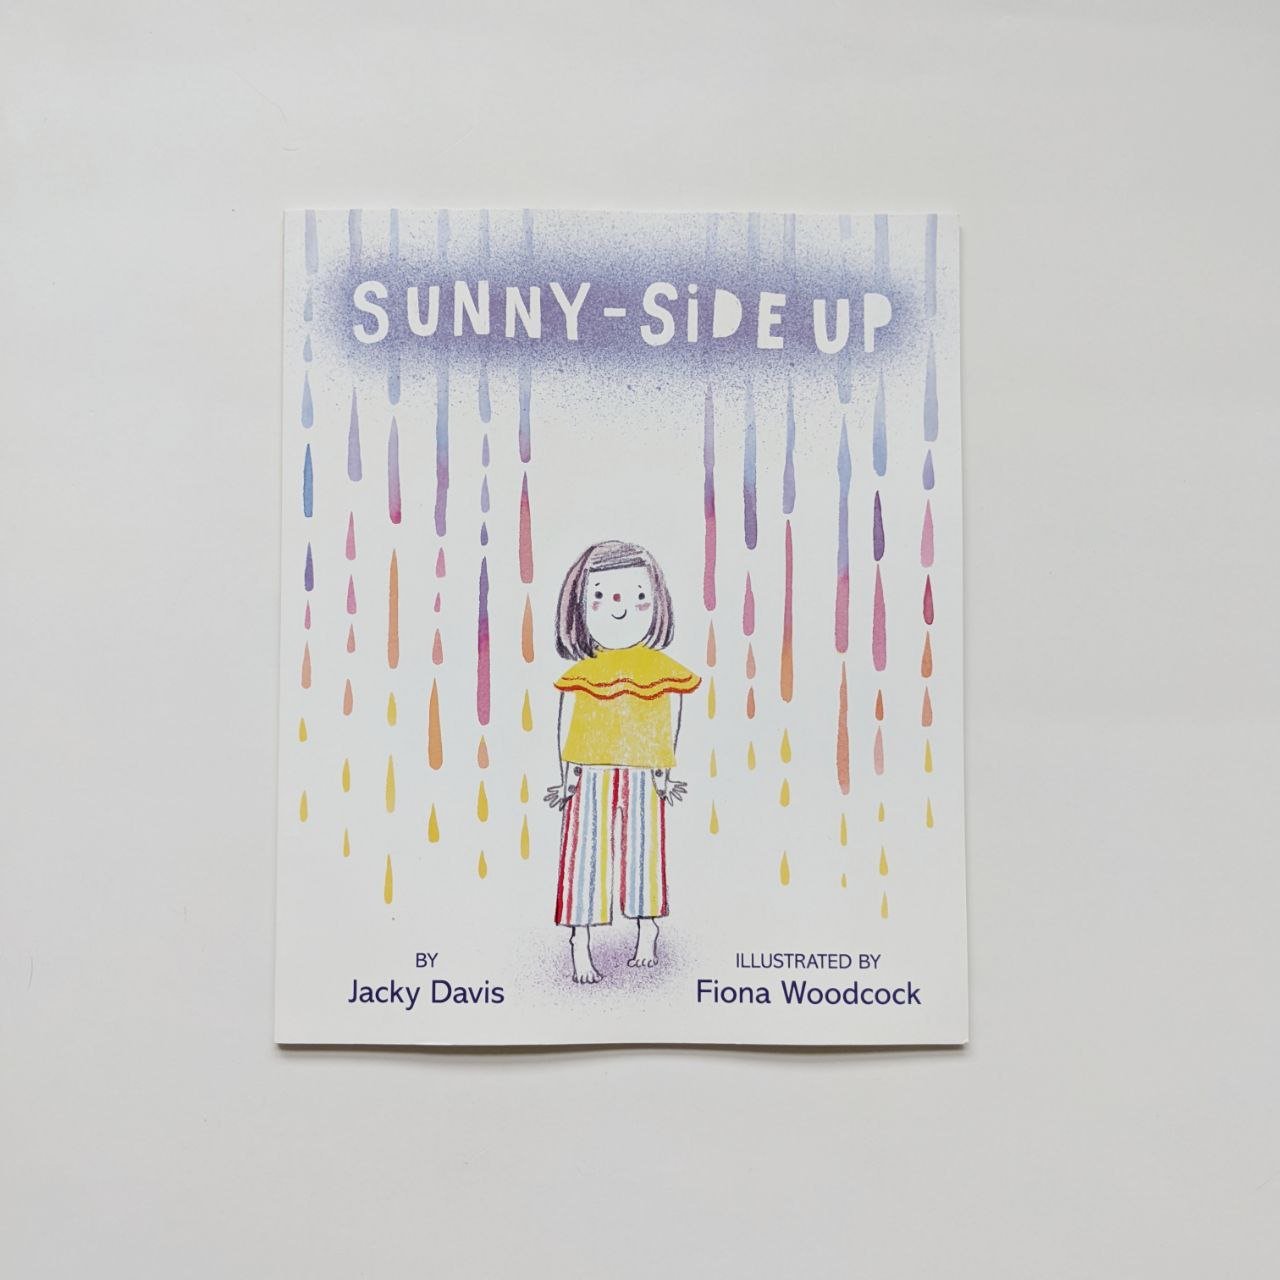 Sunny-Side Up by Jacky Davis